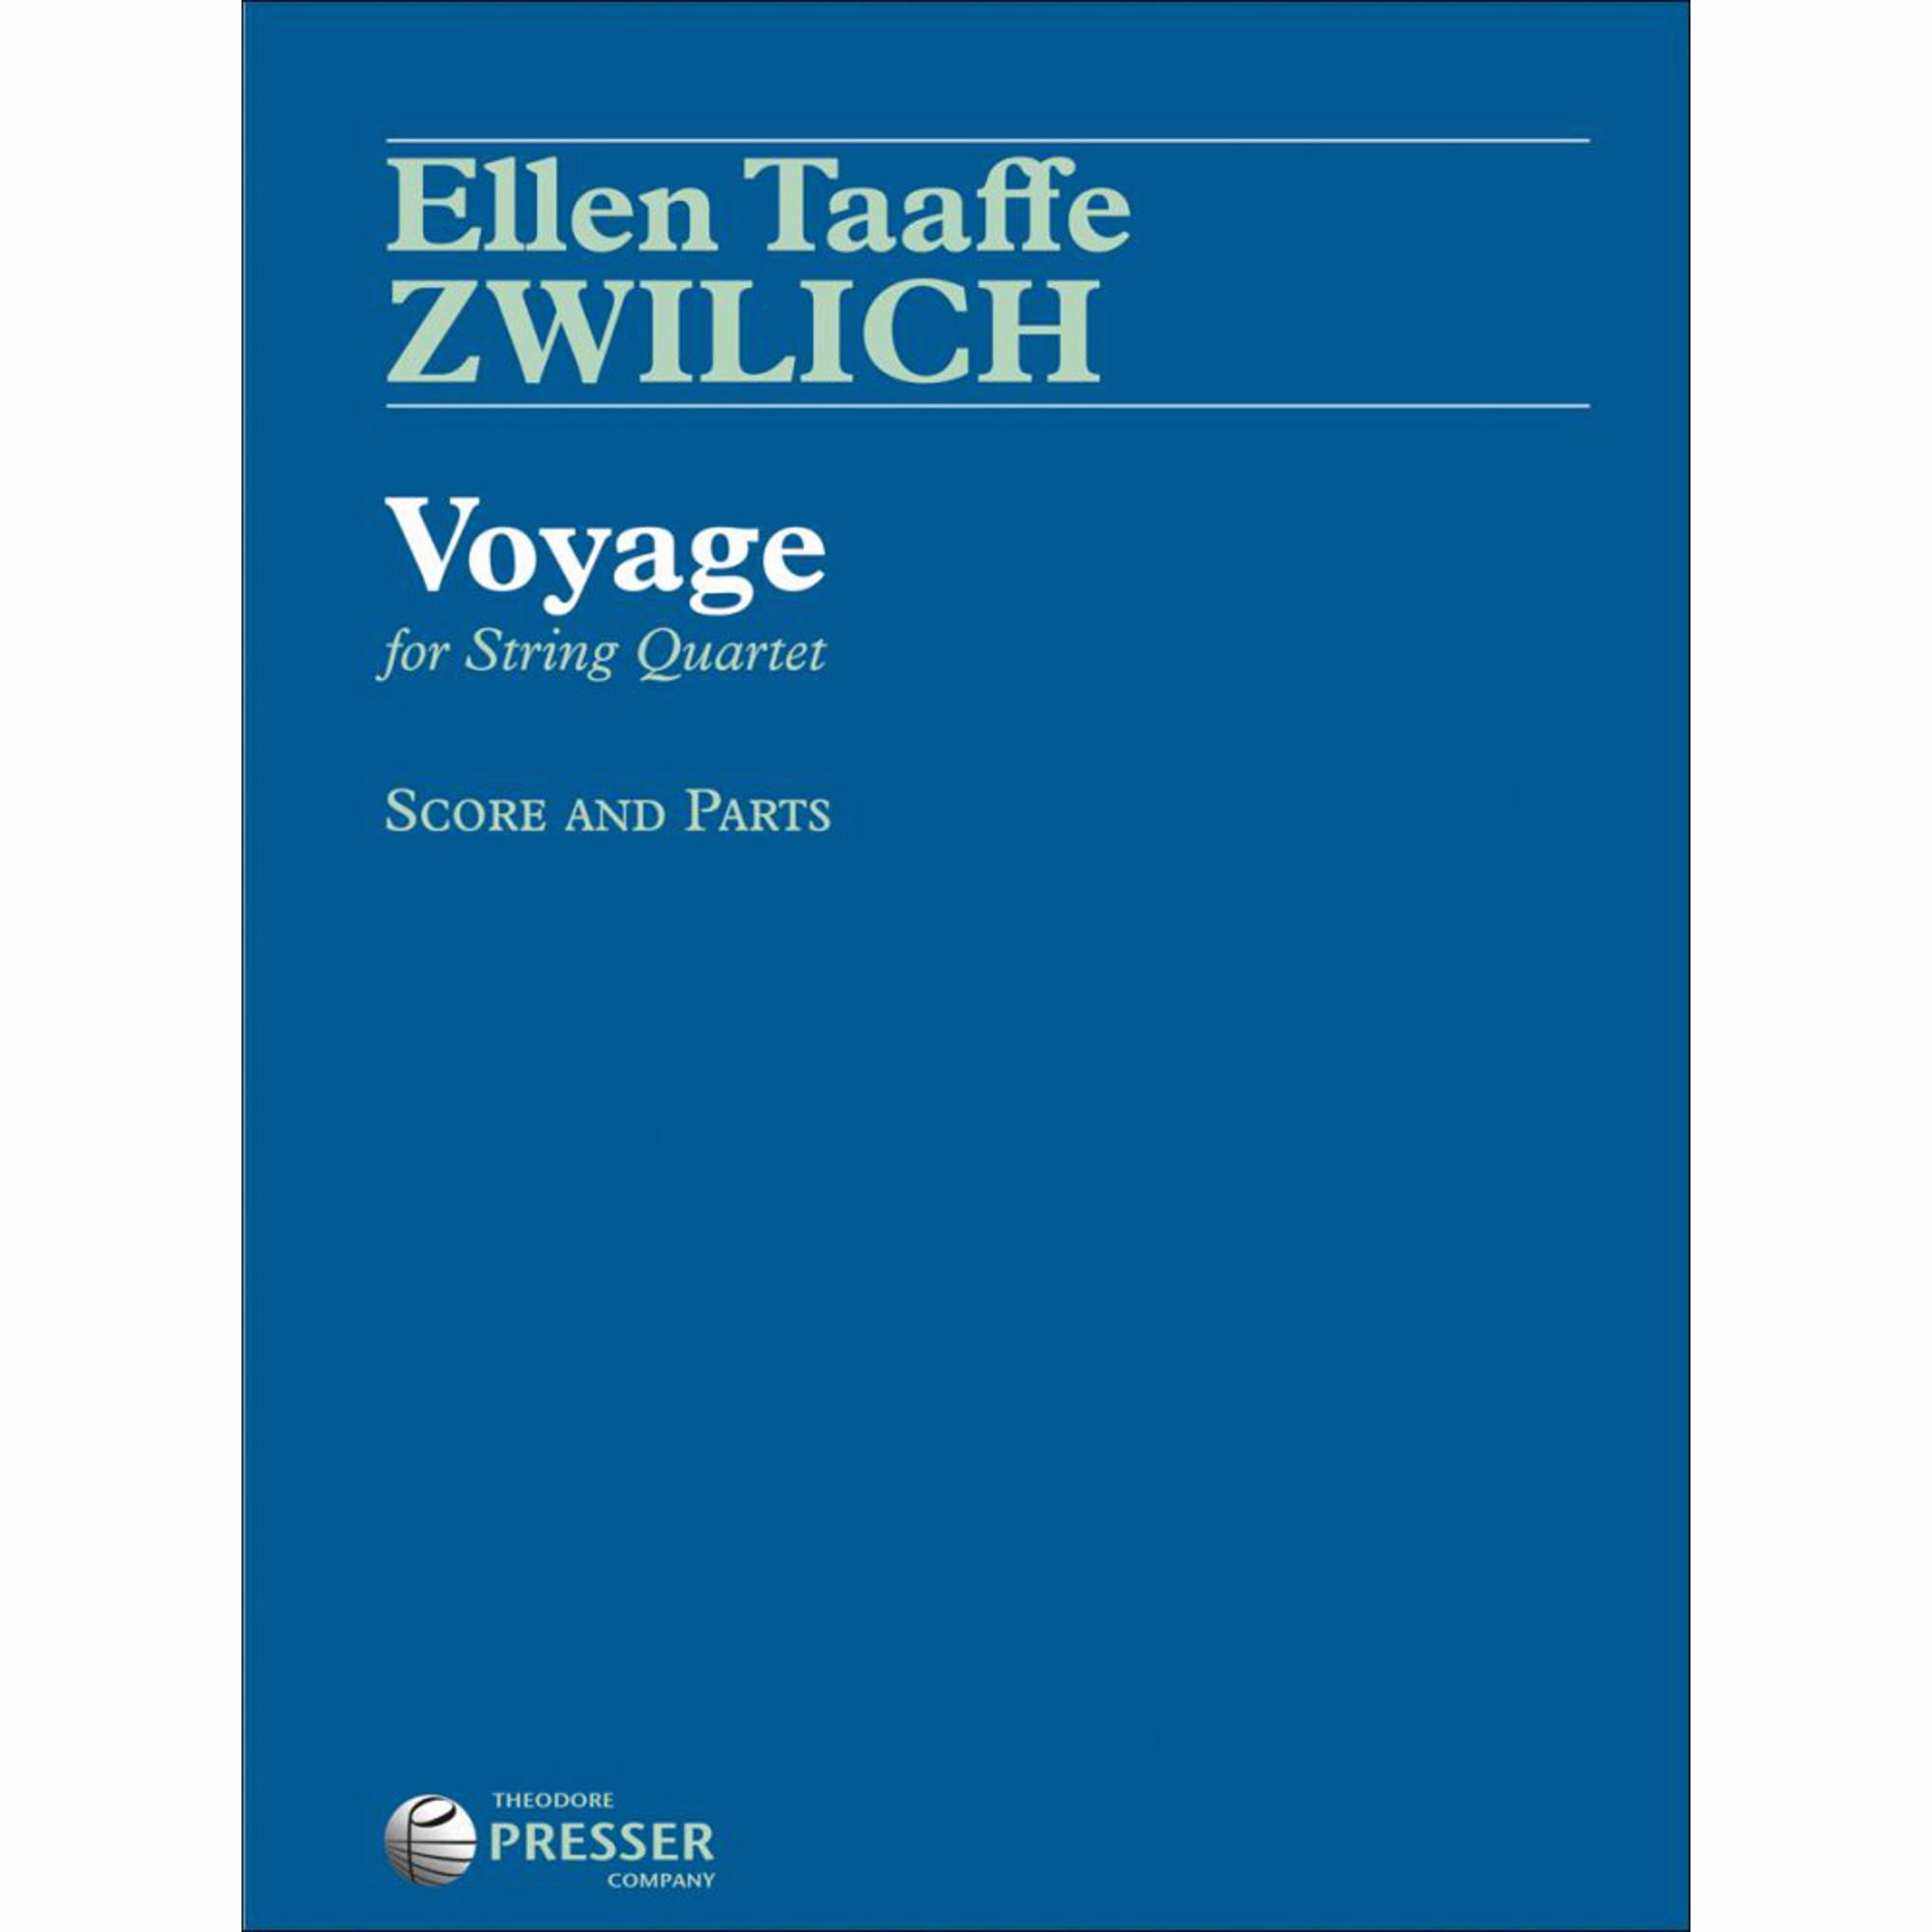 Zwilich -- Voyage for String Quartet